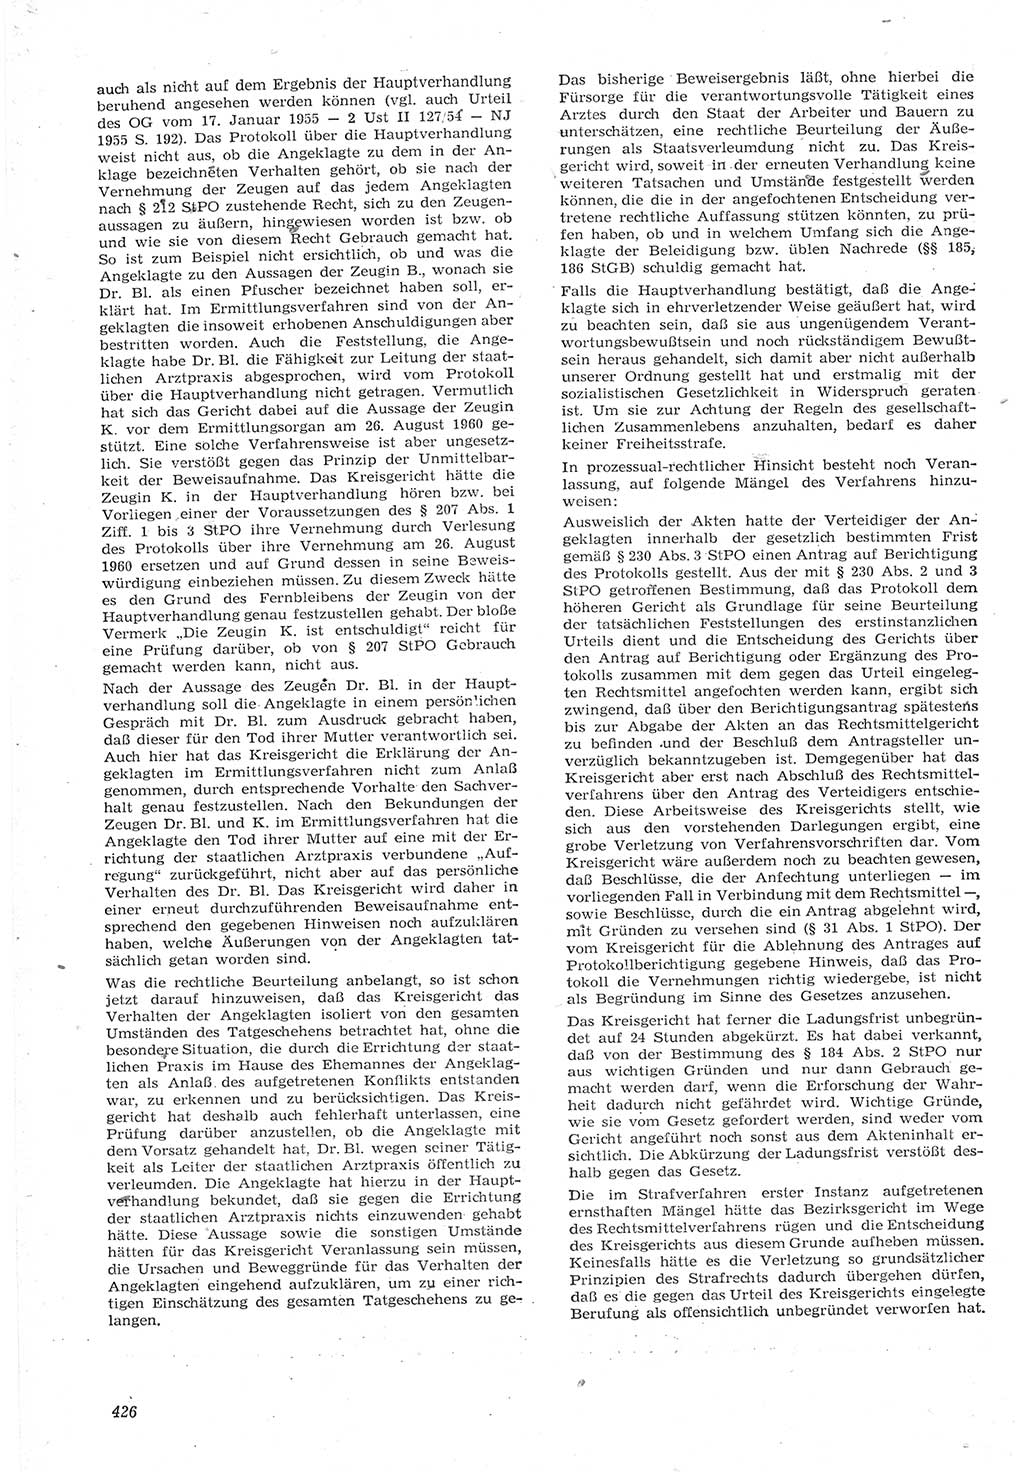 Neue Justiz (NJ), Zeitschrift für Recht und Rechtswissenschaft [Deutsche Demokratische Republik (DDR)], 15. Jahrgang 1961, Seite 426 (NJ DDR 1961, S. 426)